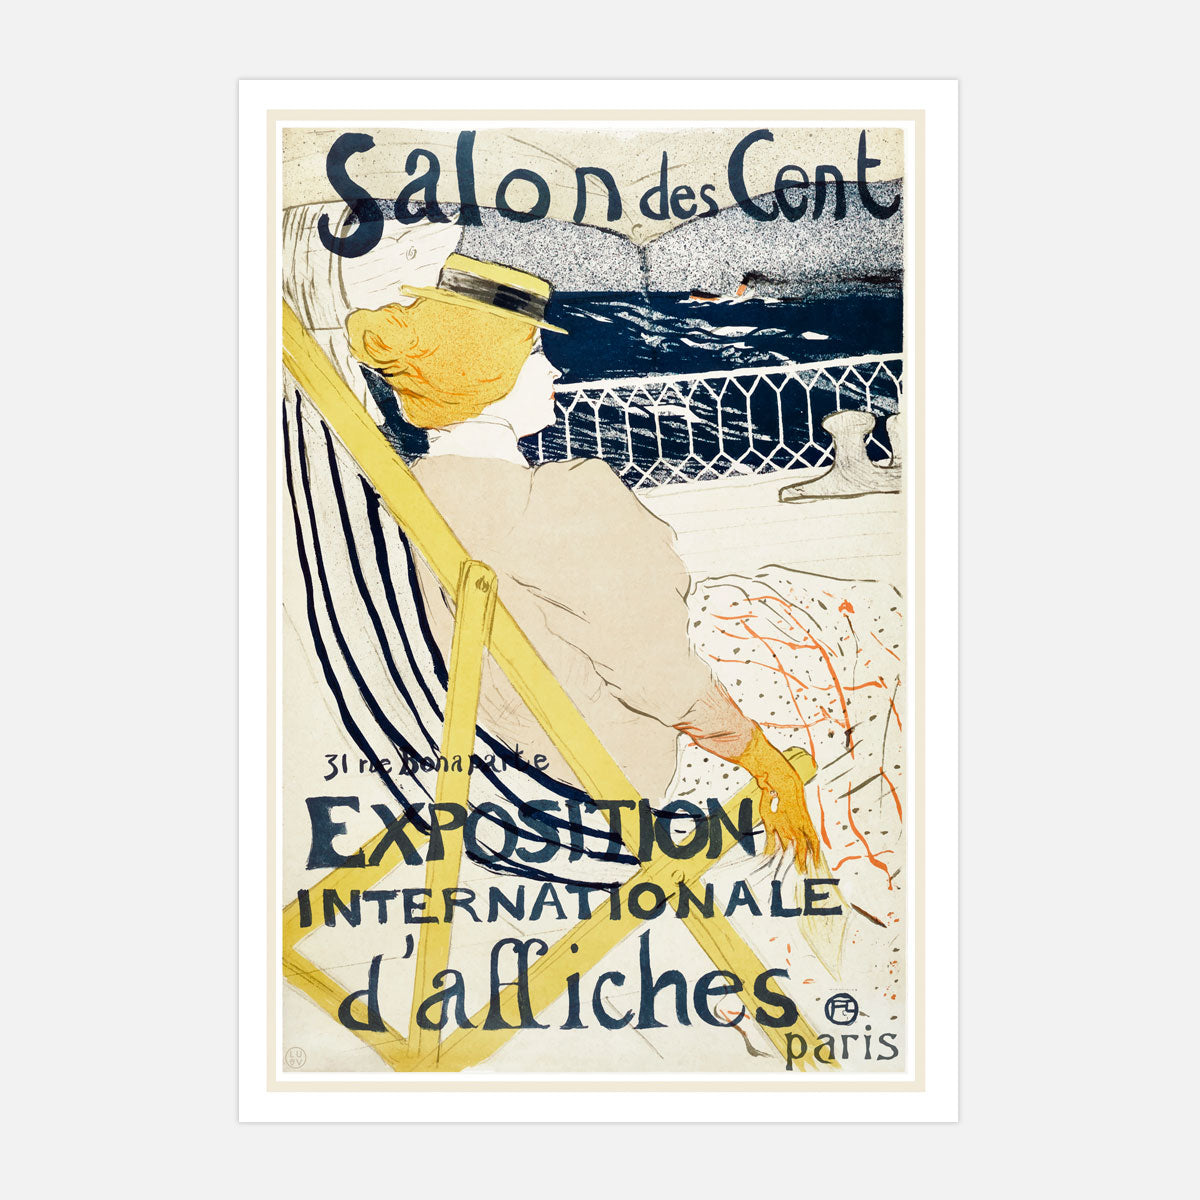 Salon des Cent Paris vintage retro advertisment from Places We Luv